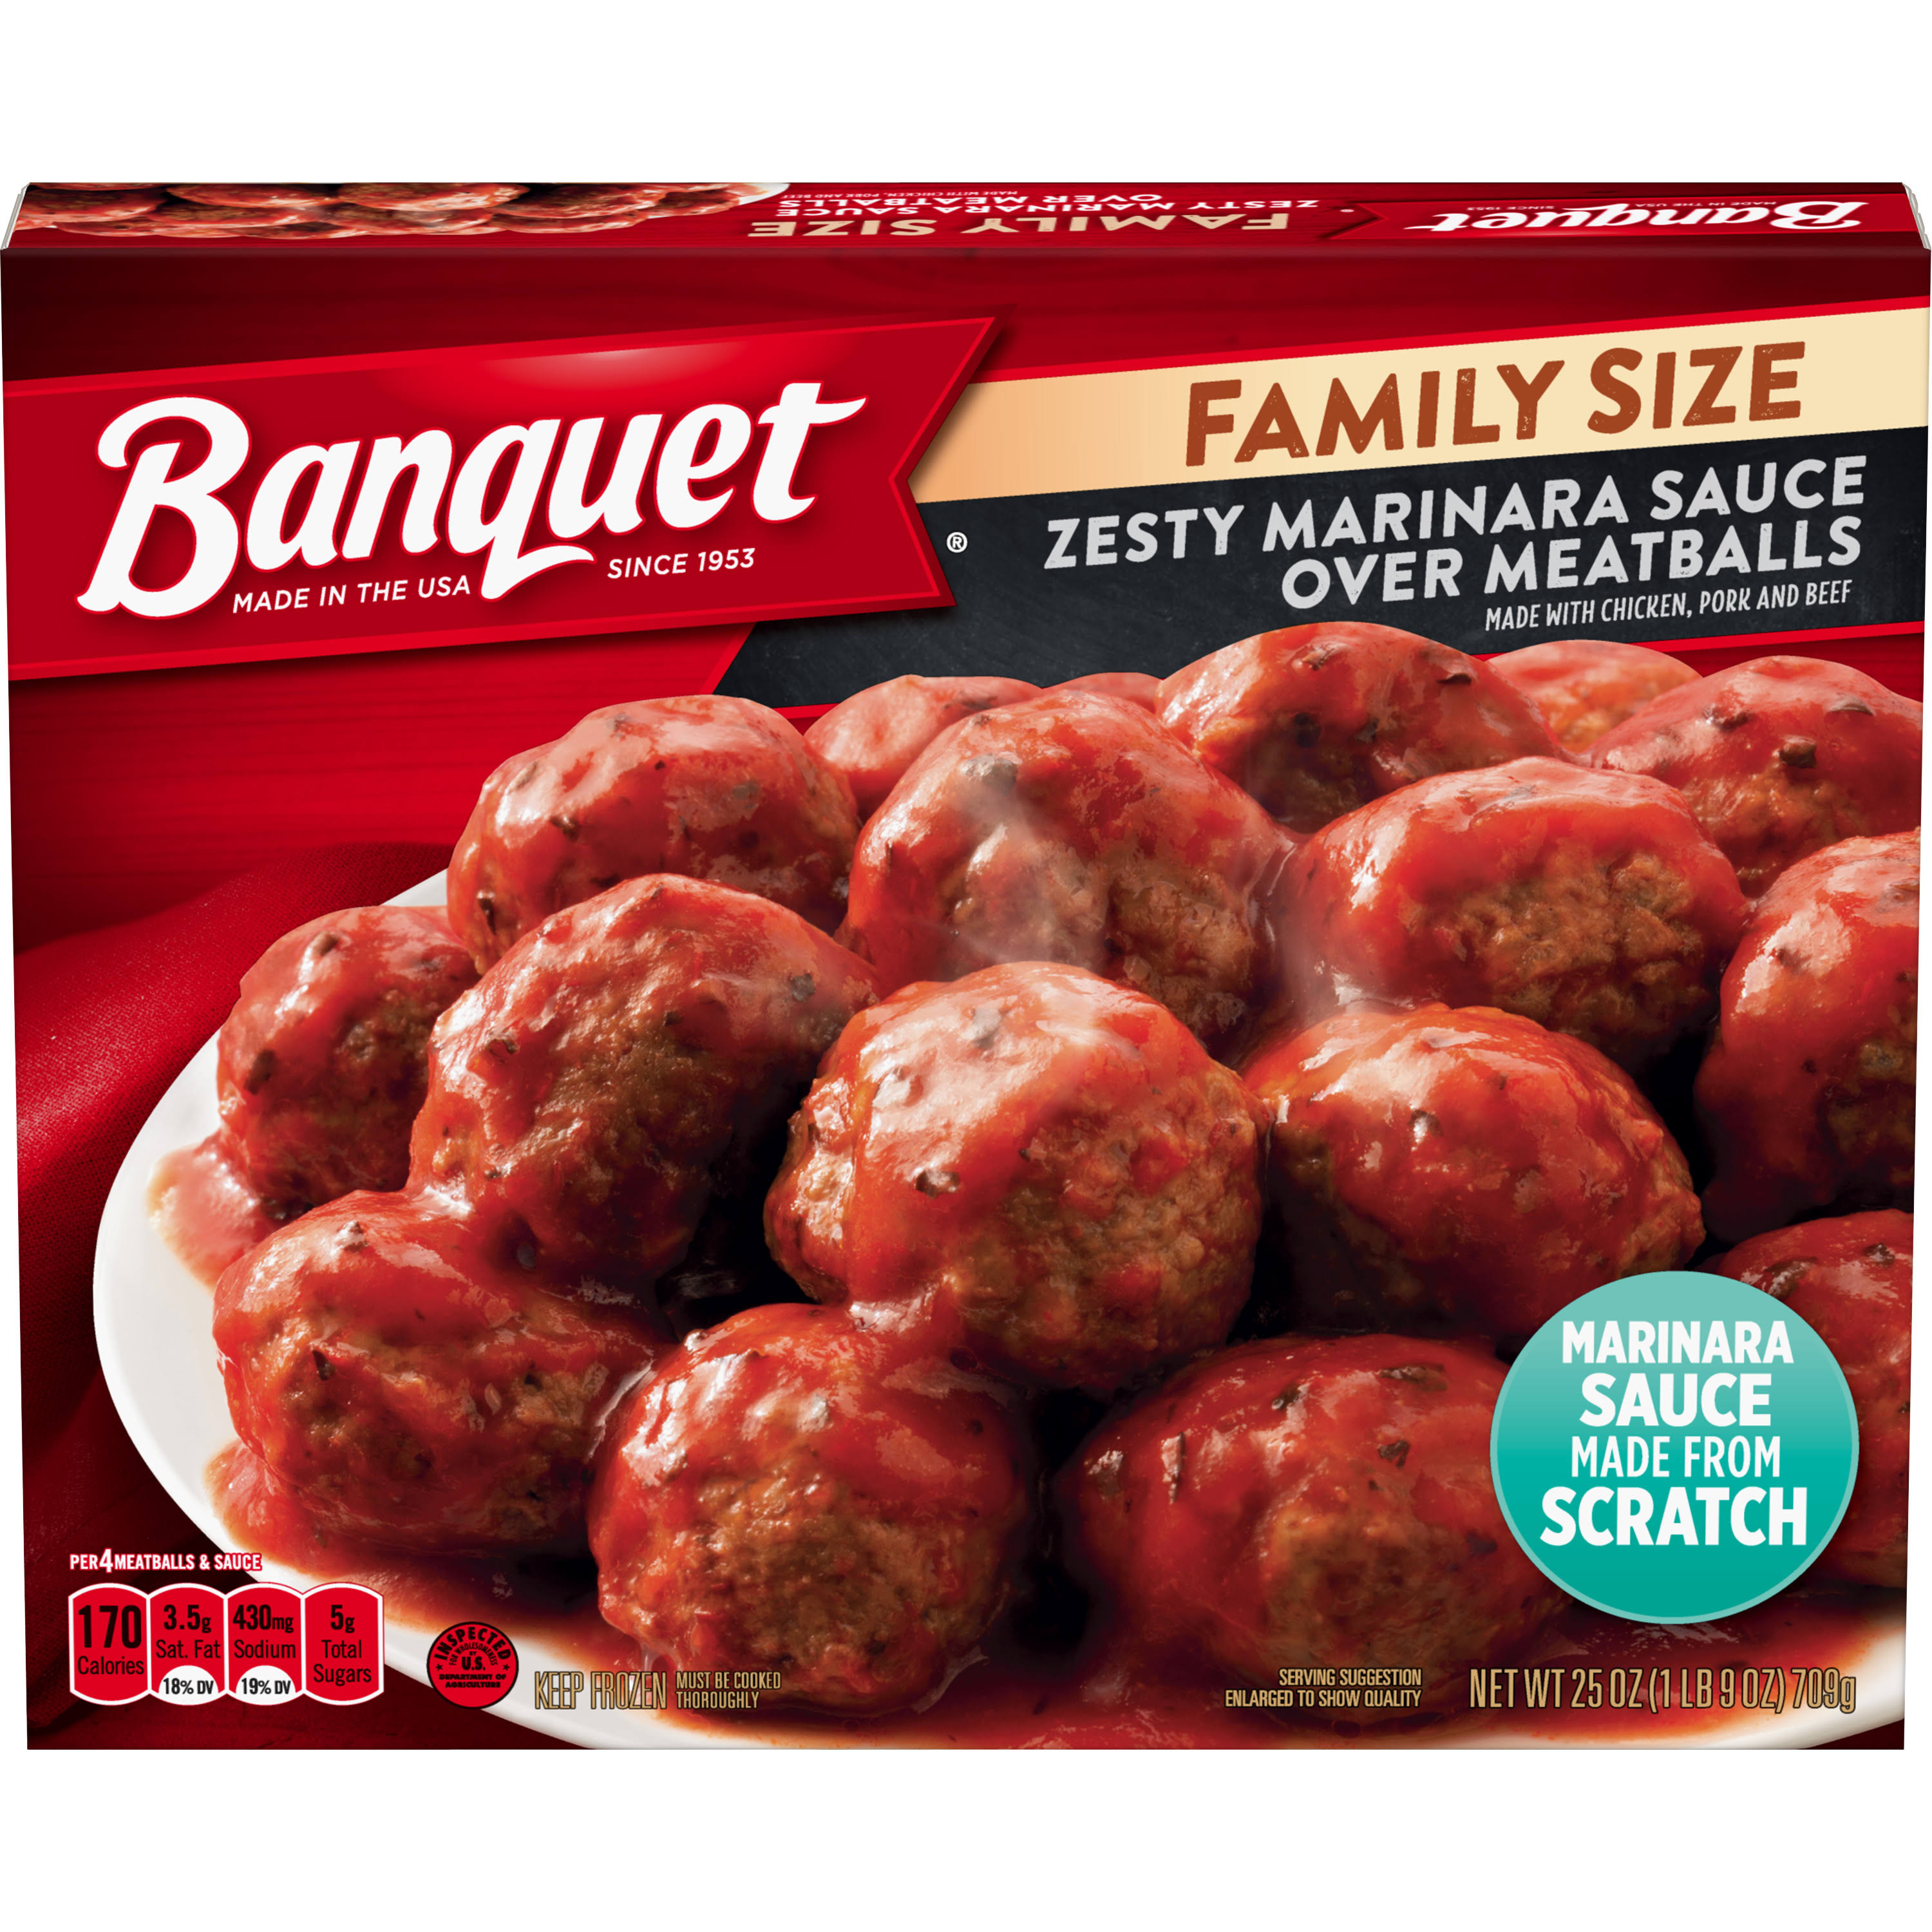 Banquet Zesty Marinara Sauce over Meatballs - 25oz